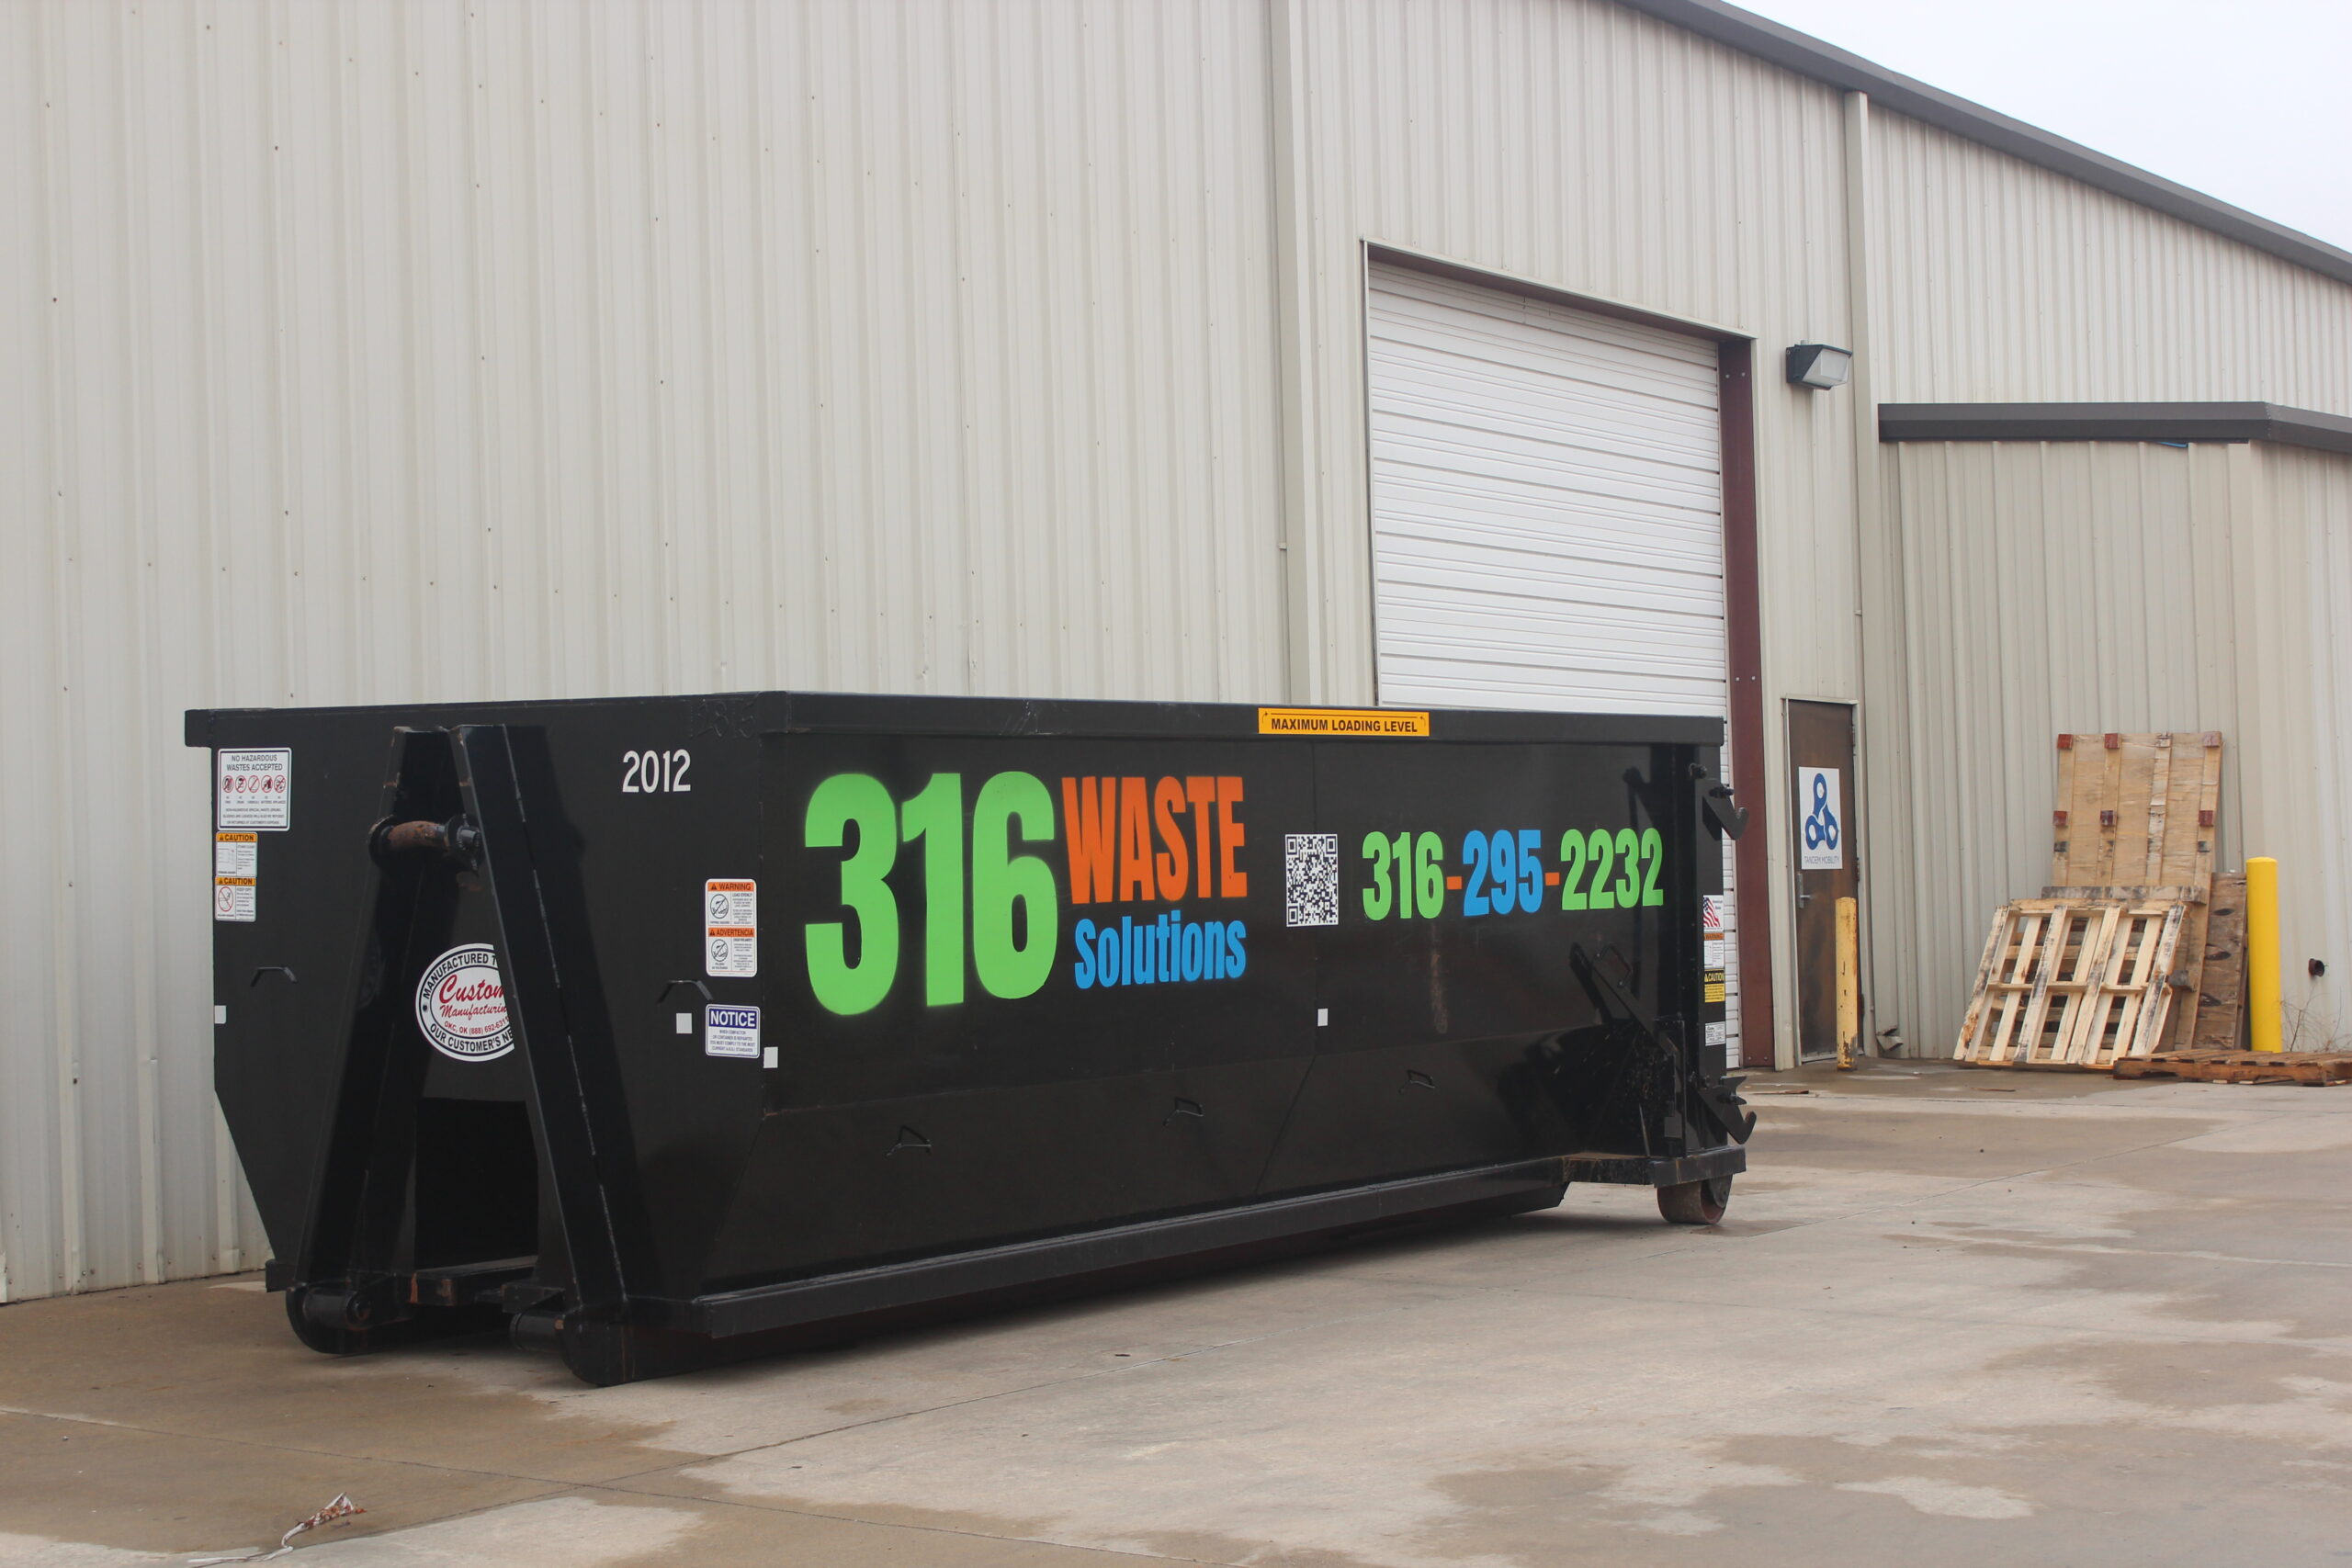 Local Dumpster Rental in Wichita